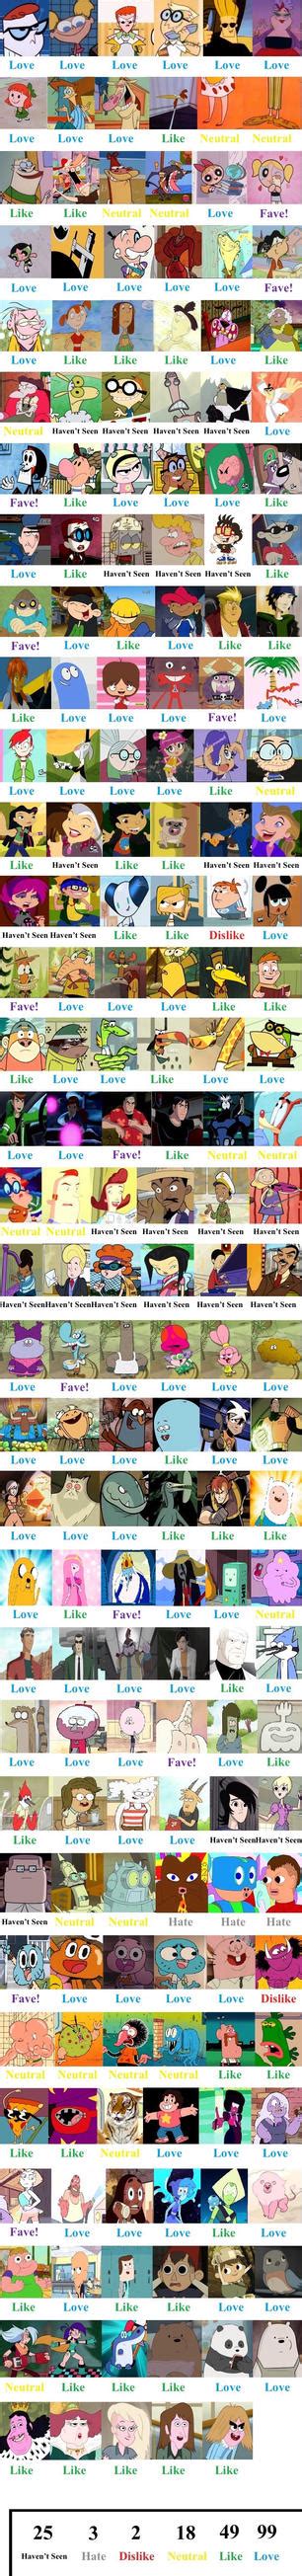 Cartoon Network Scorecard